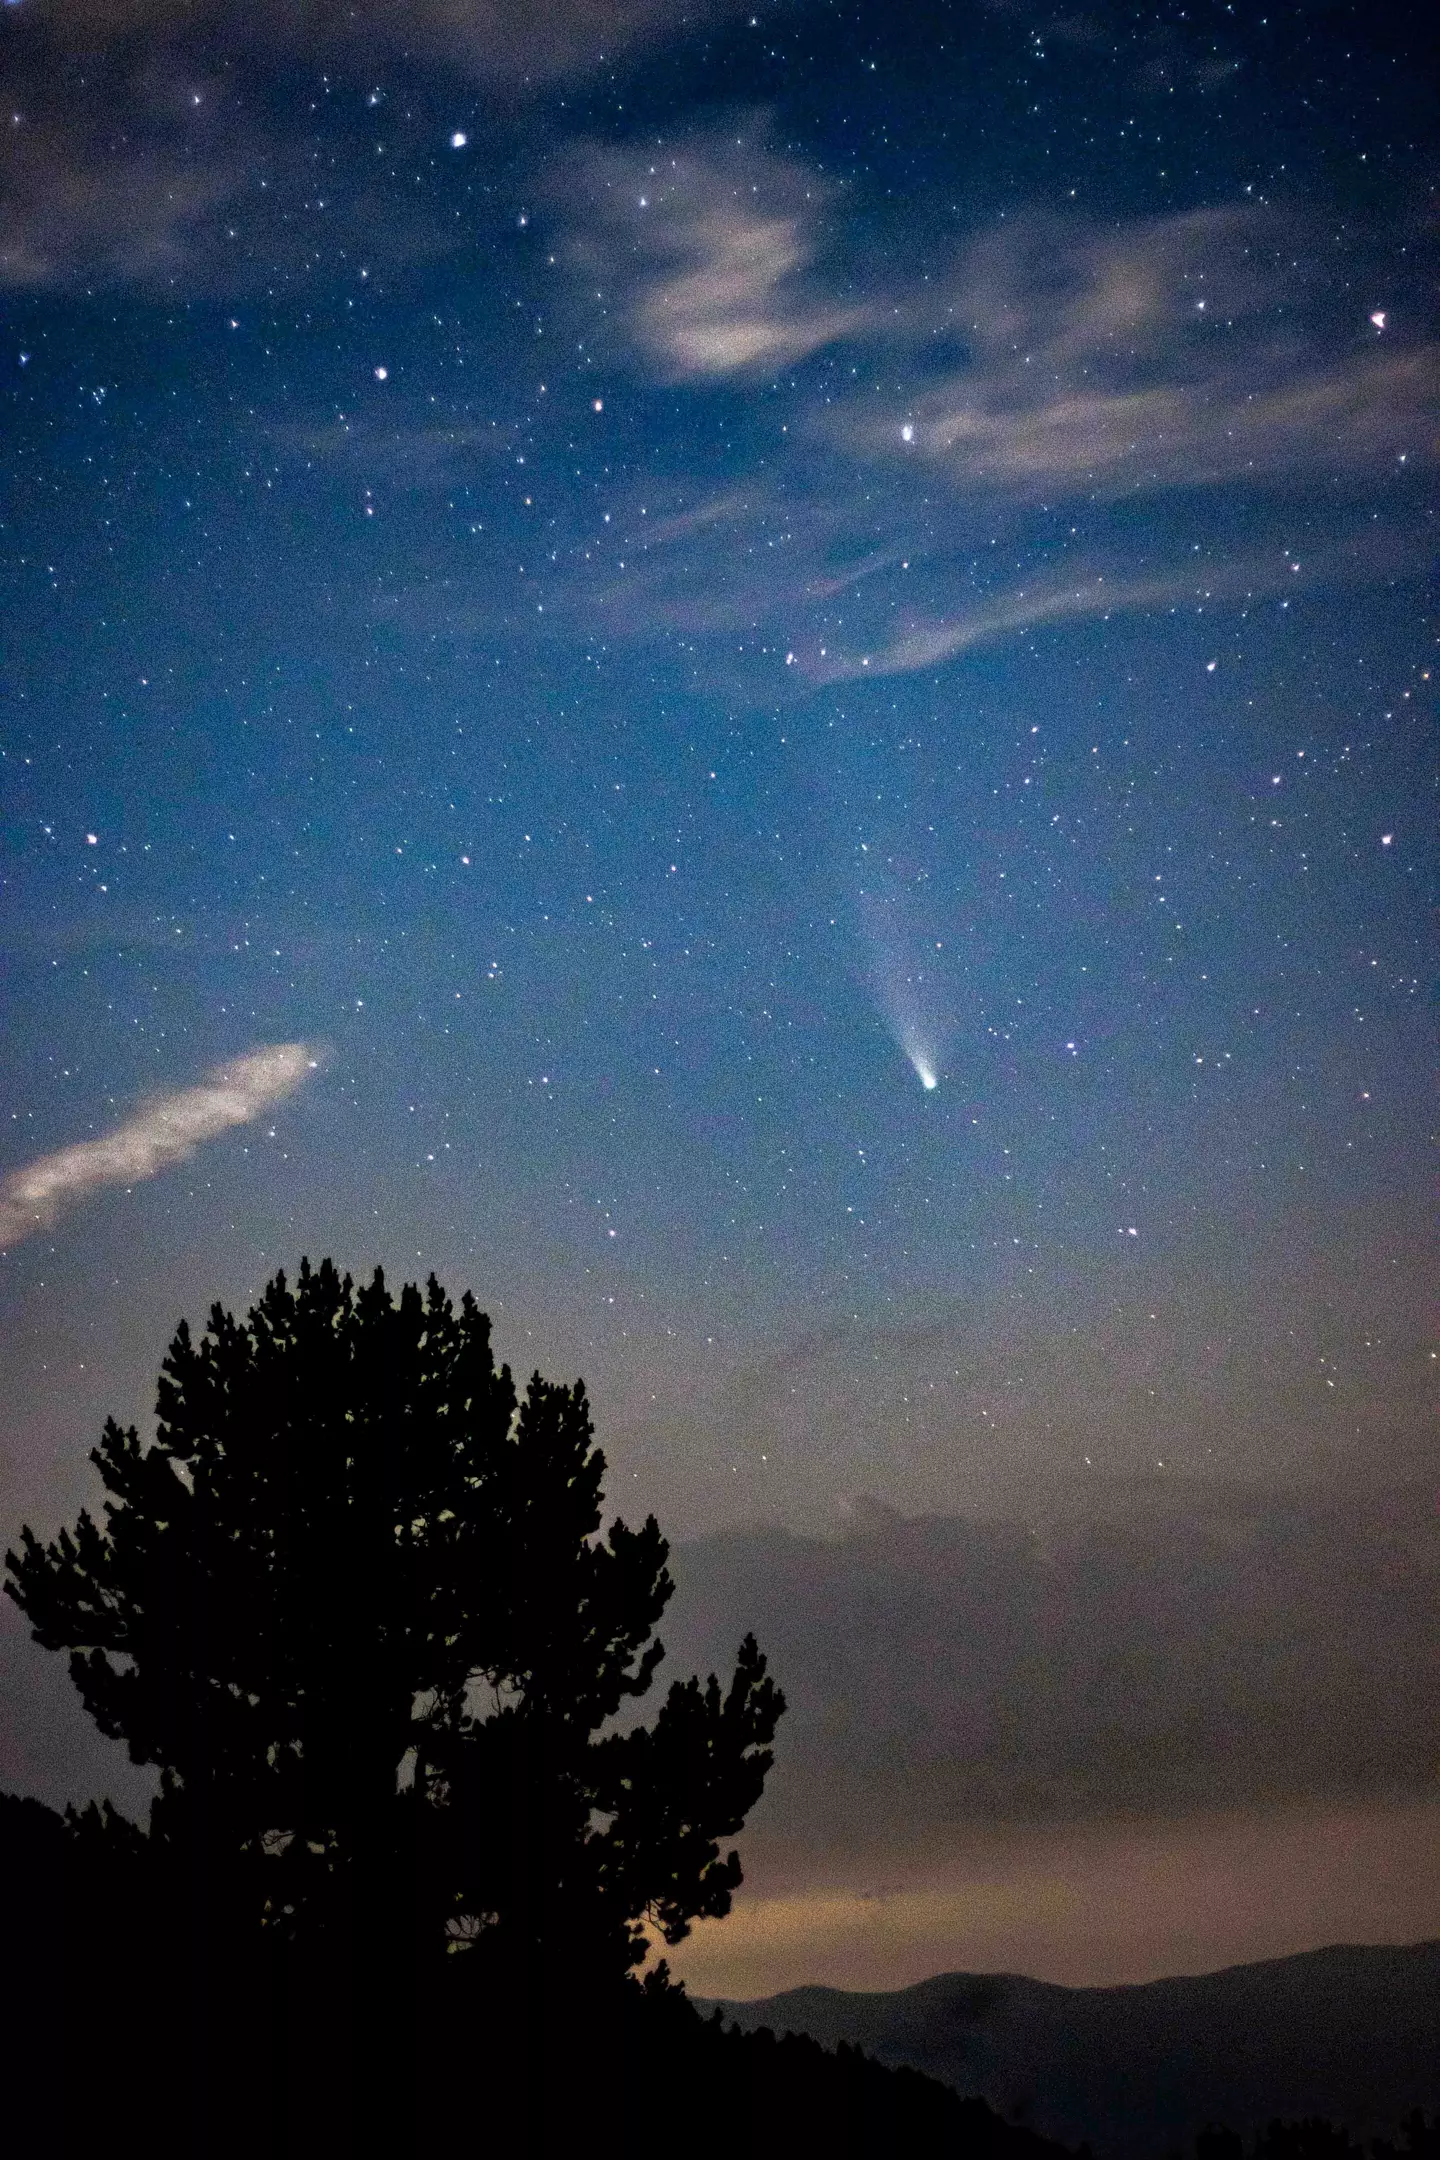 A comet in the sky.